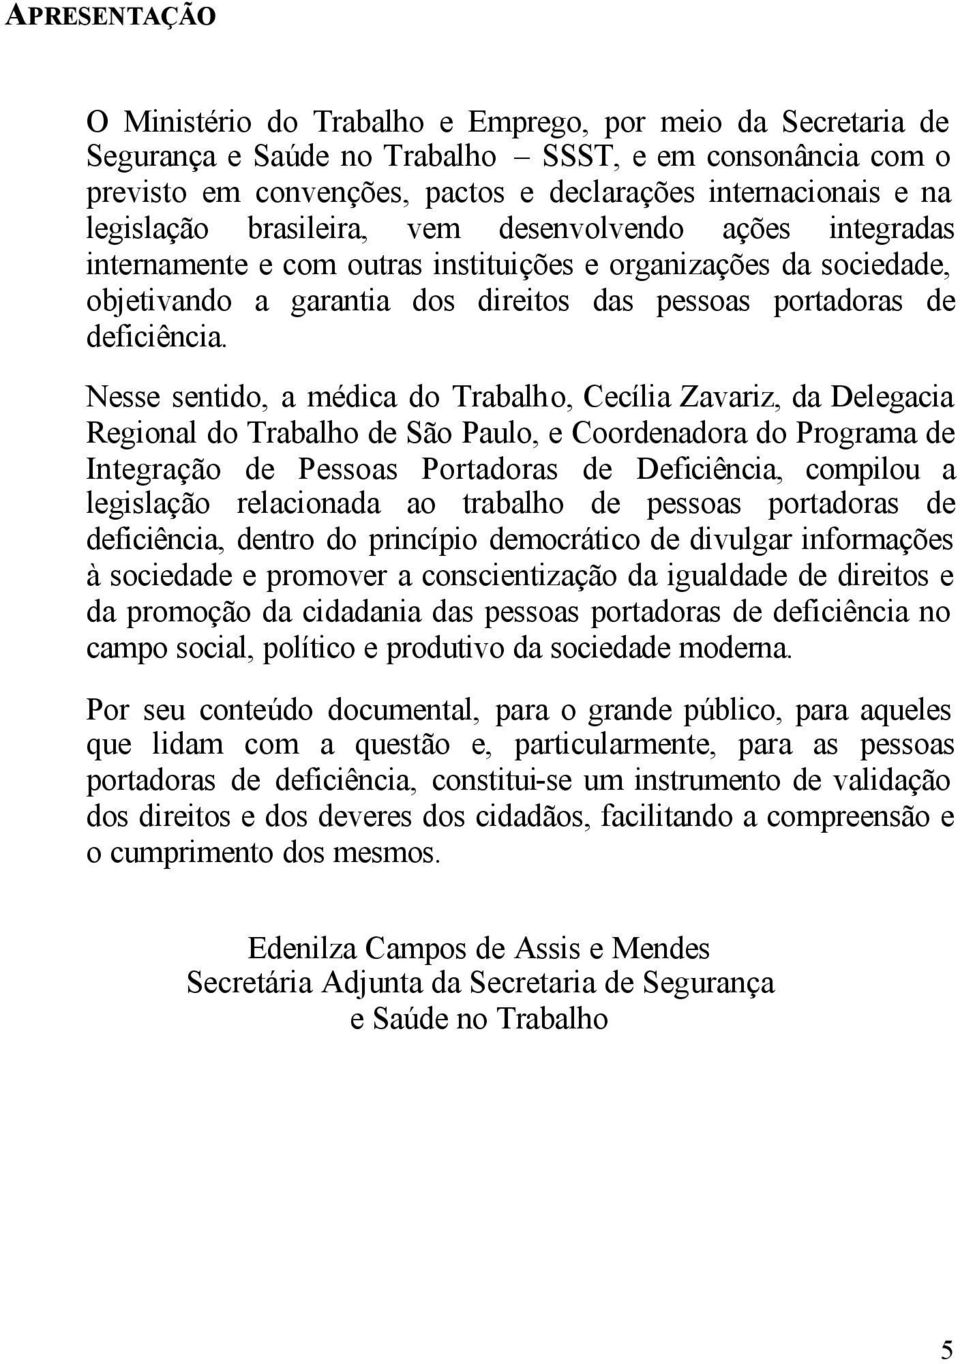 Nesse sentido, a médica do Trabalho, Cecília Zavariz, da Delegacia Regional do Trabalho de São Paulo, e Coordenadora do Programa de Integração de Pessoas Portadoras de Deficiência, compilou a